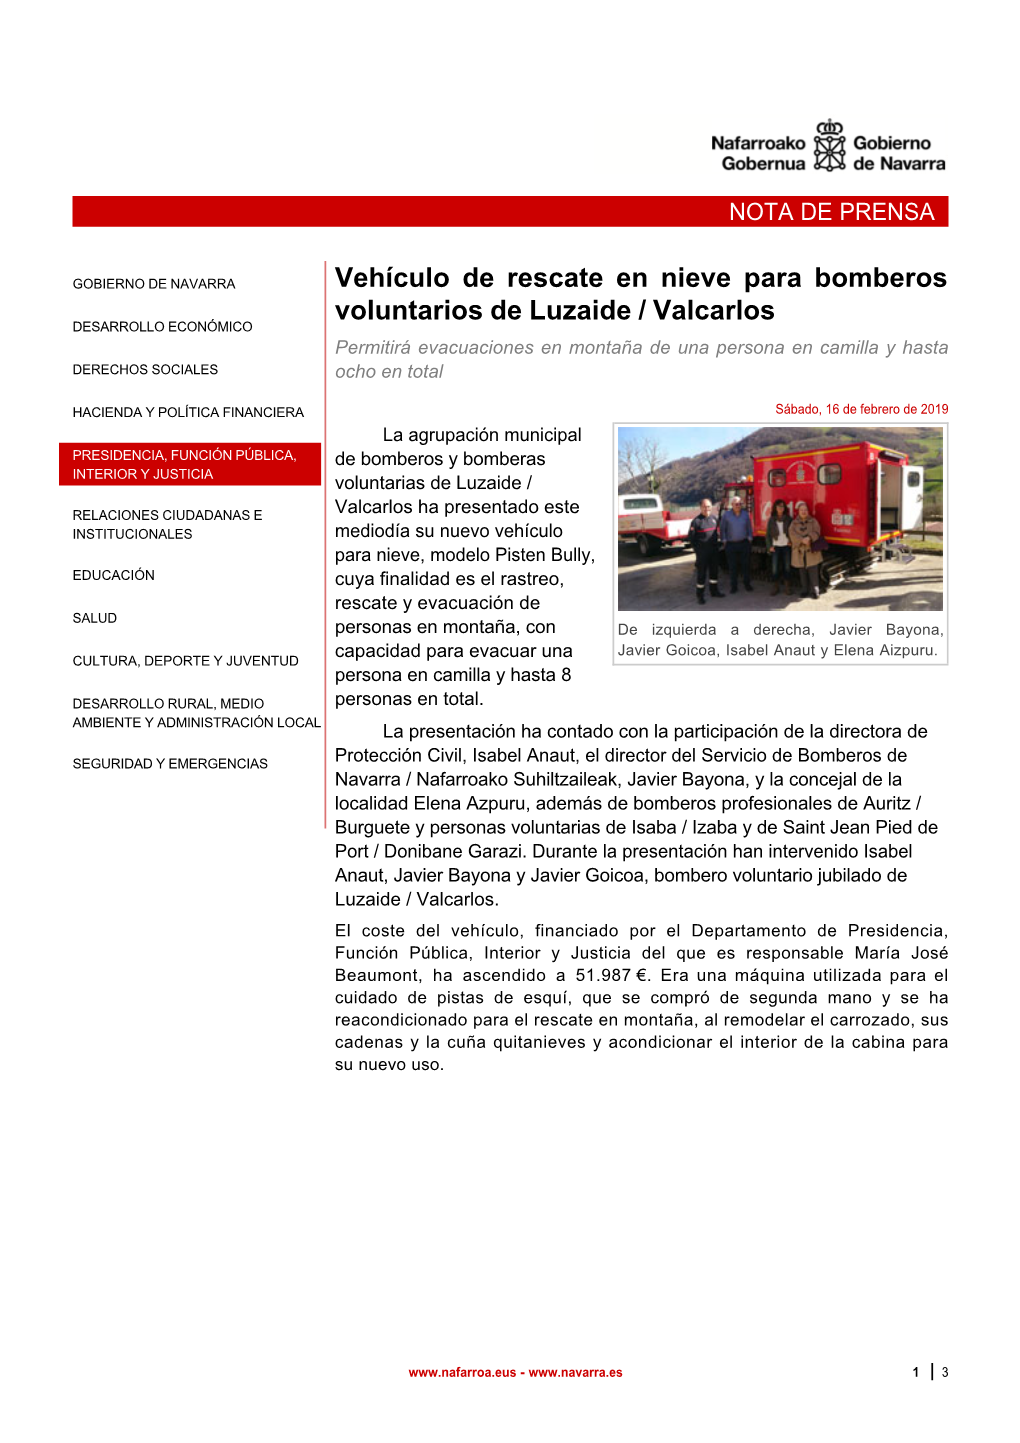 Vehículo De Rescate En Nieve Para Bomberos Voluntarios De Luzaide / Valcarlos